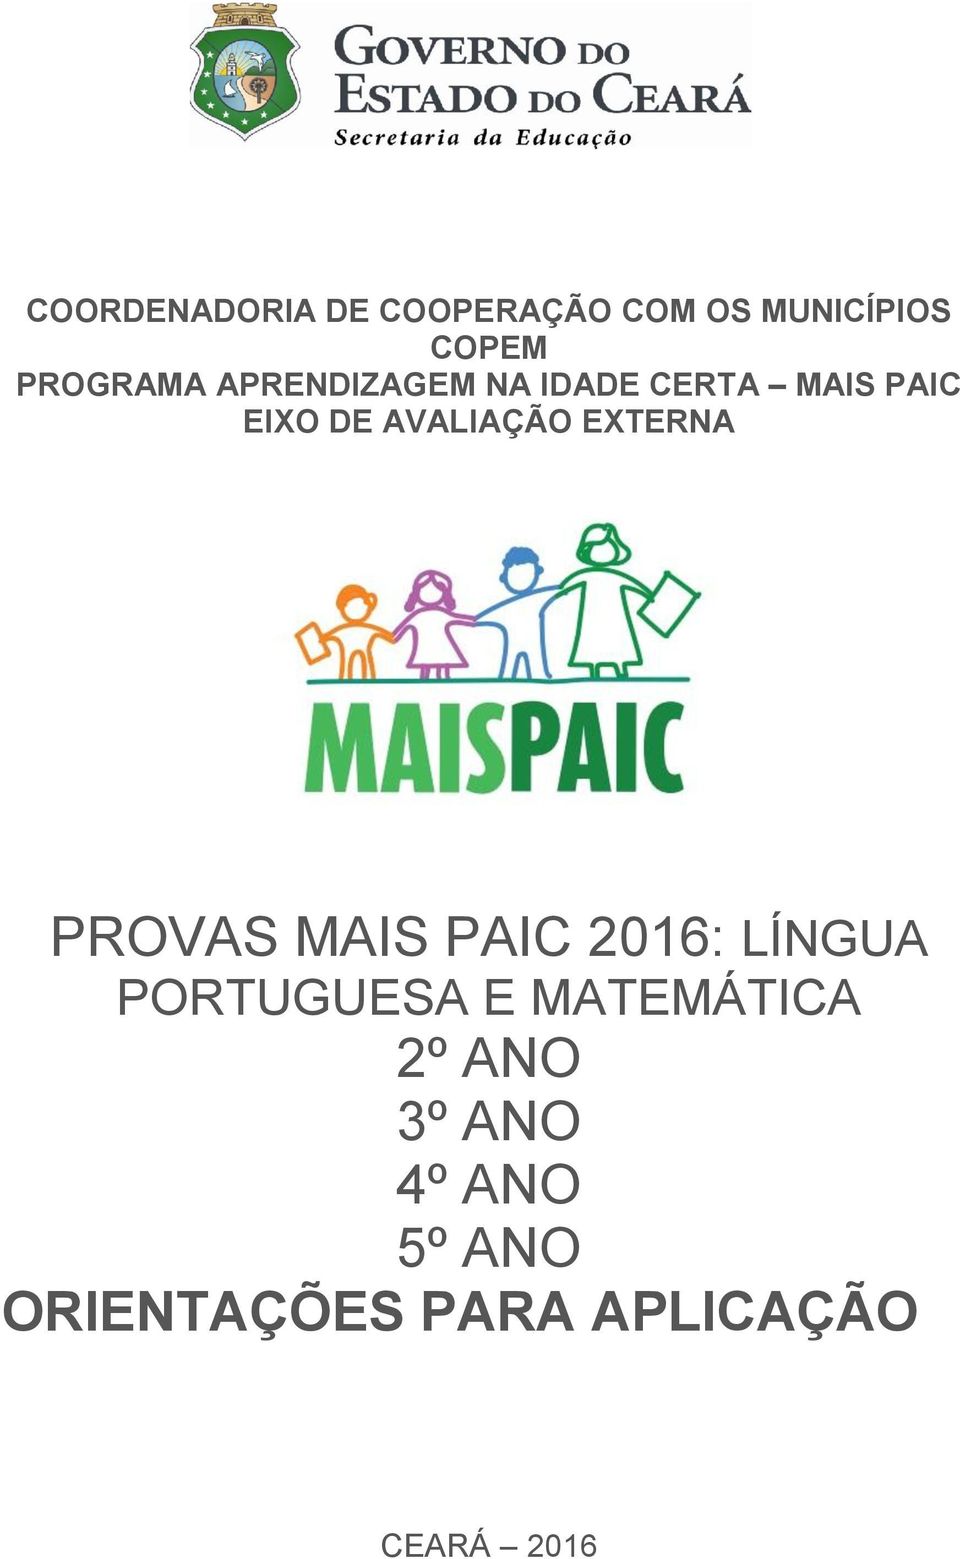 EXTERNA PROVAS MAIS PAIC 2016: LÍNGUA PORTUGUESA E